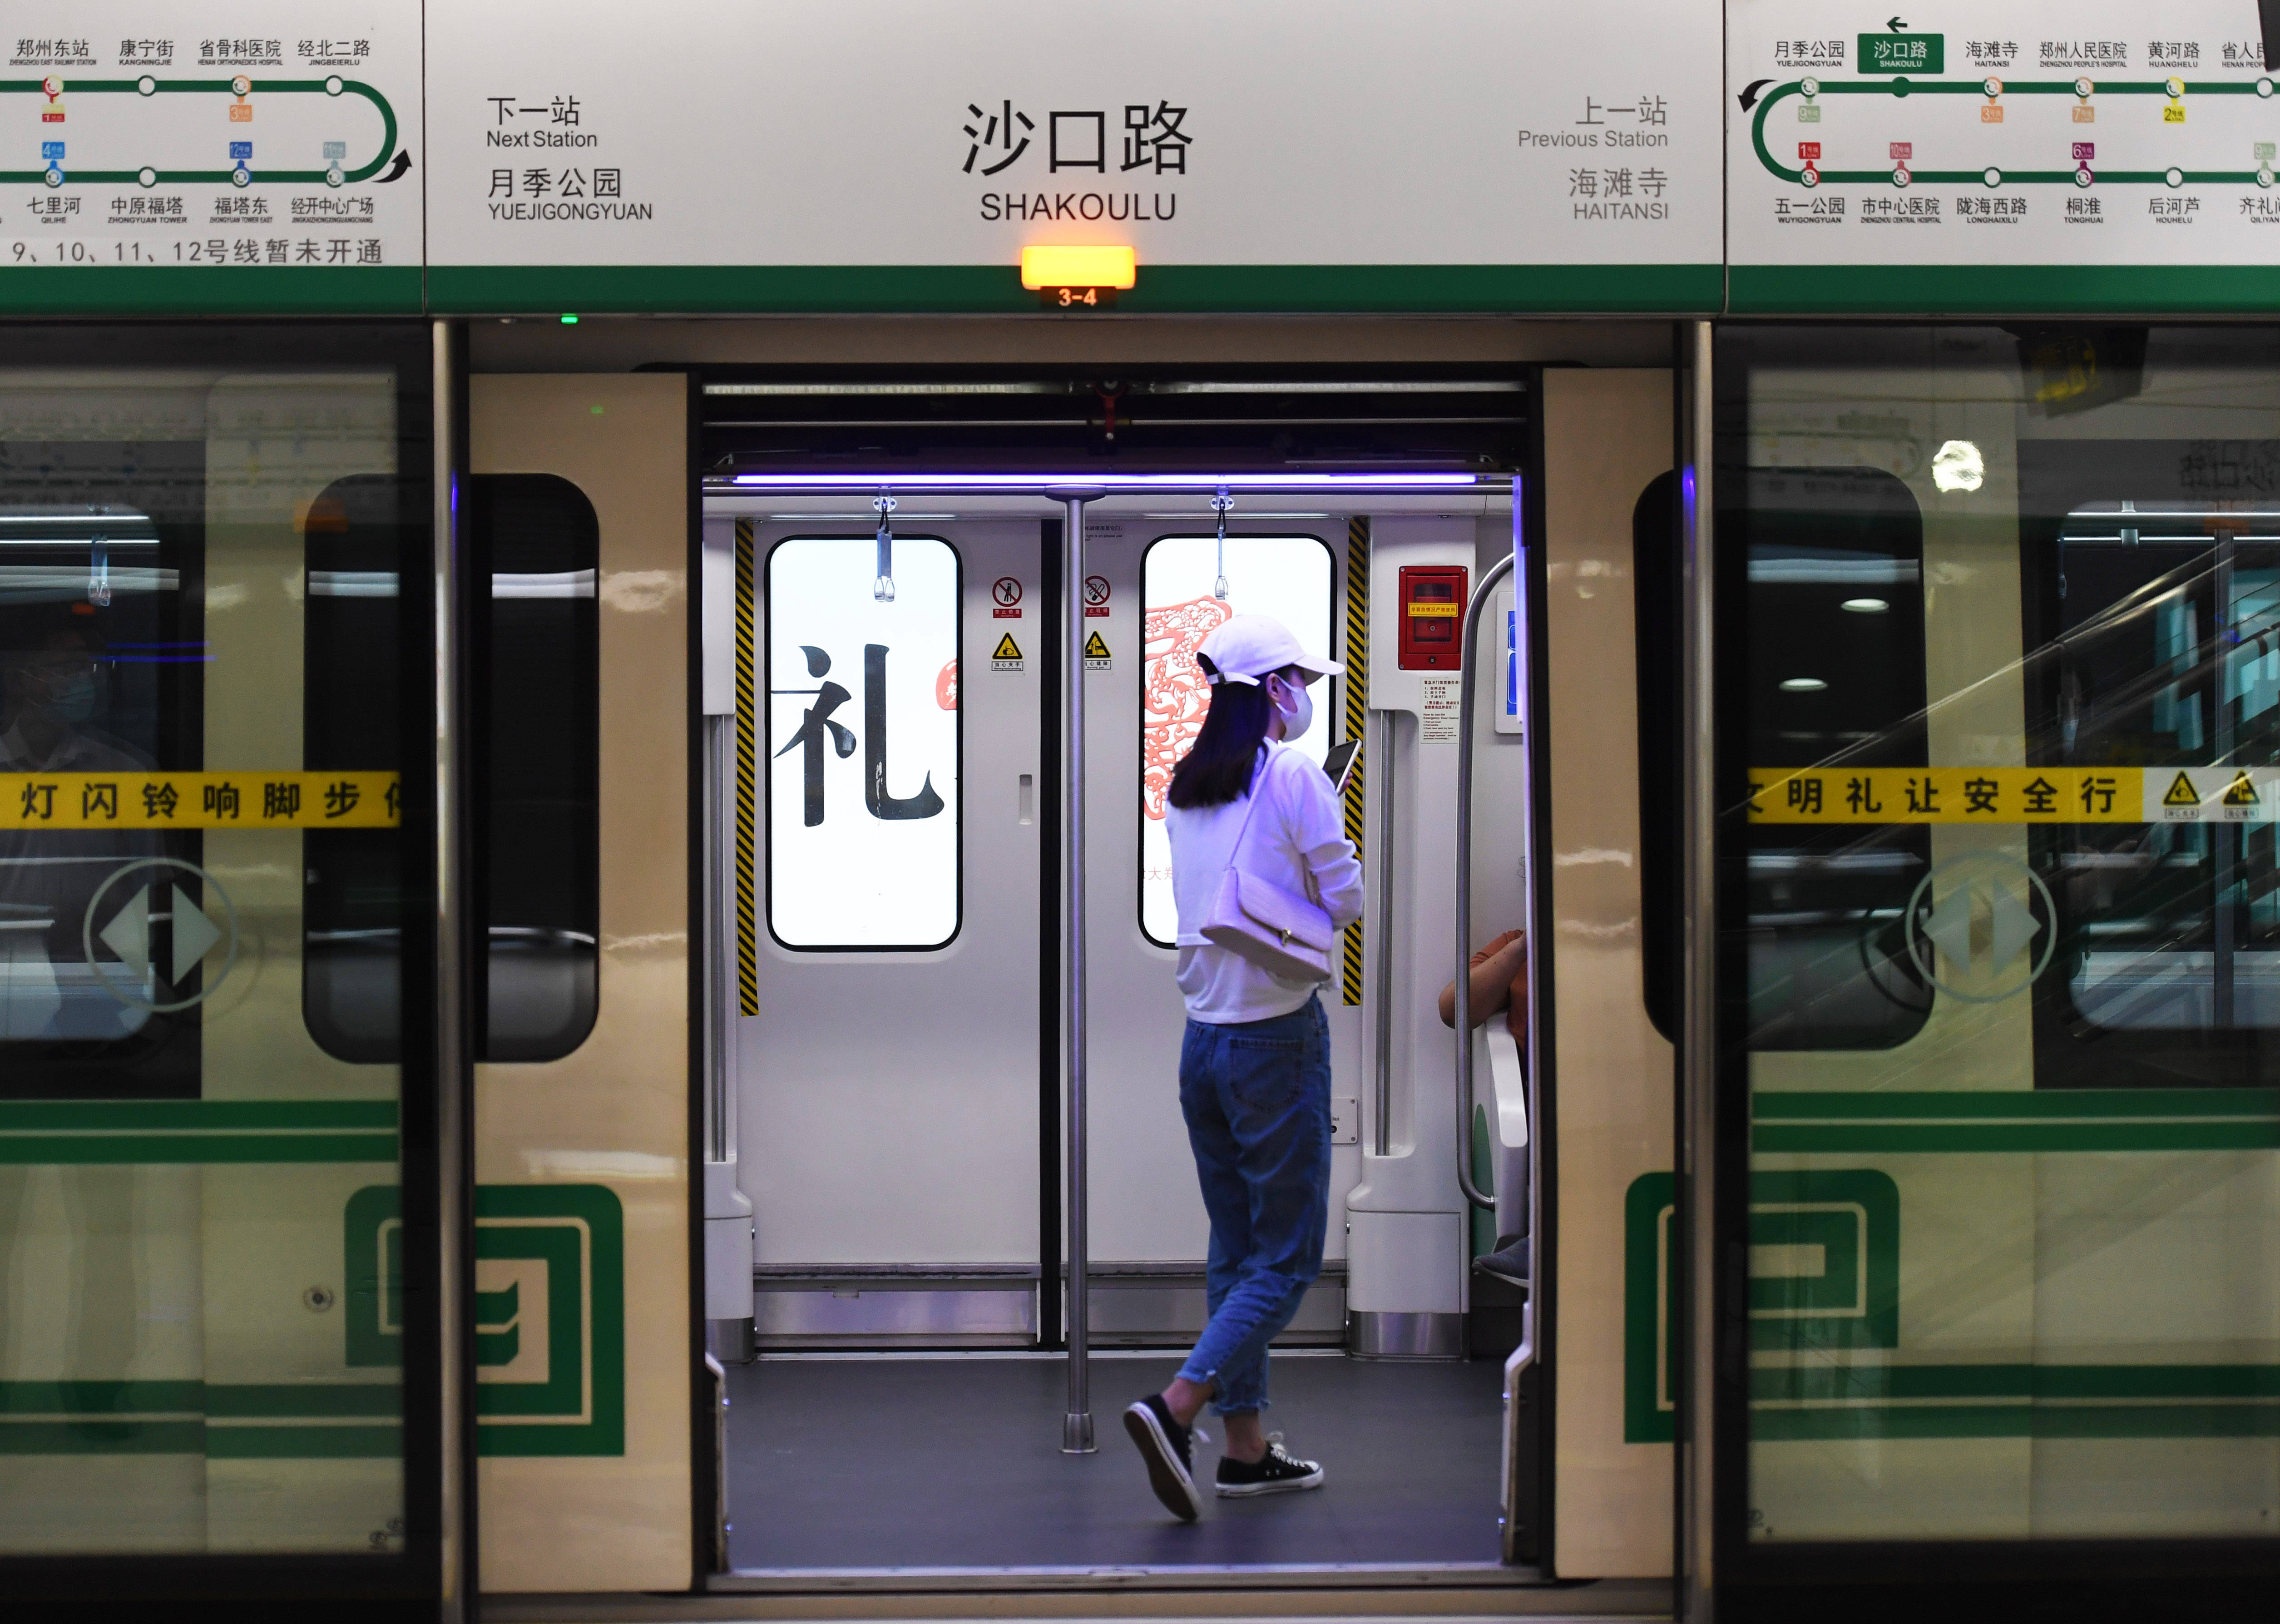 郑州到郑州南站地铁多少钱 郑州南站到地铁口步行有多远